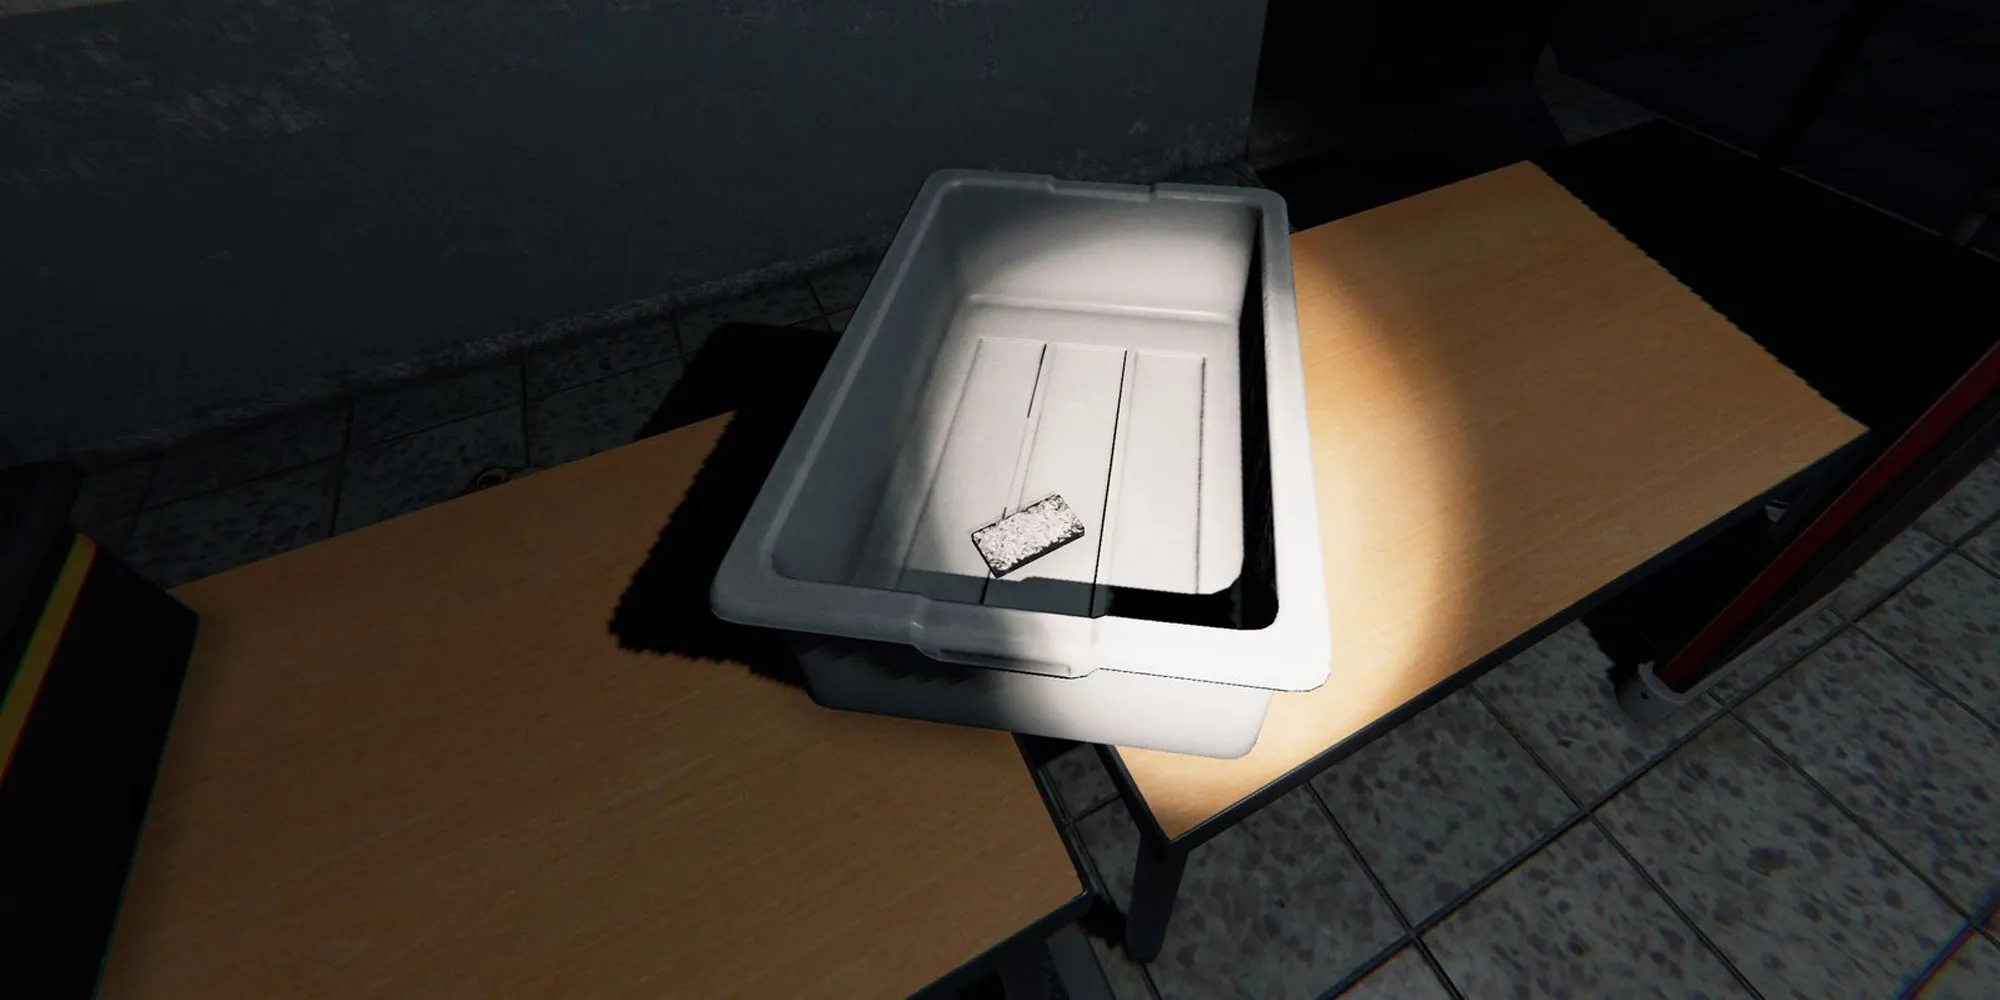 图片展示了Phasmophobia中监狱的木桌上放着一个装有塔罗牌的灰色塑料盒子。